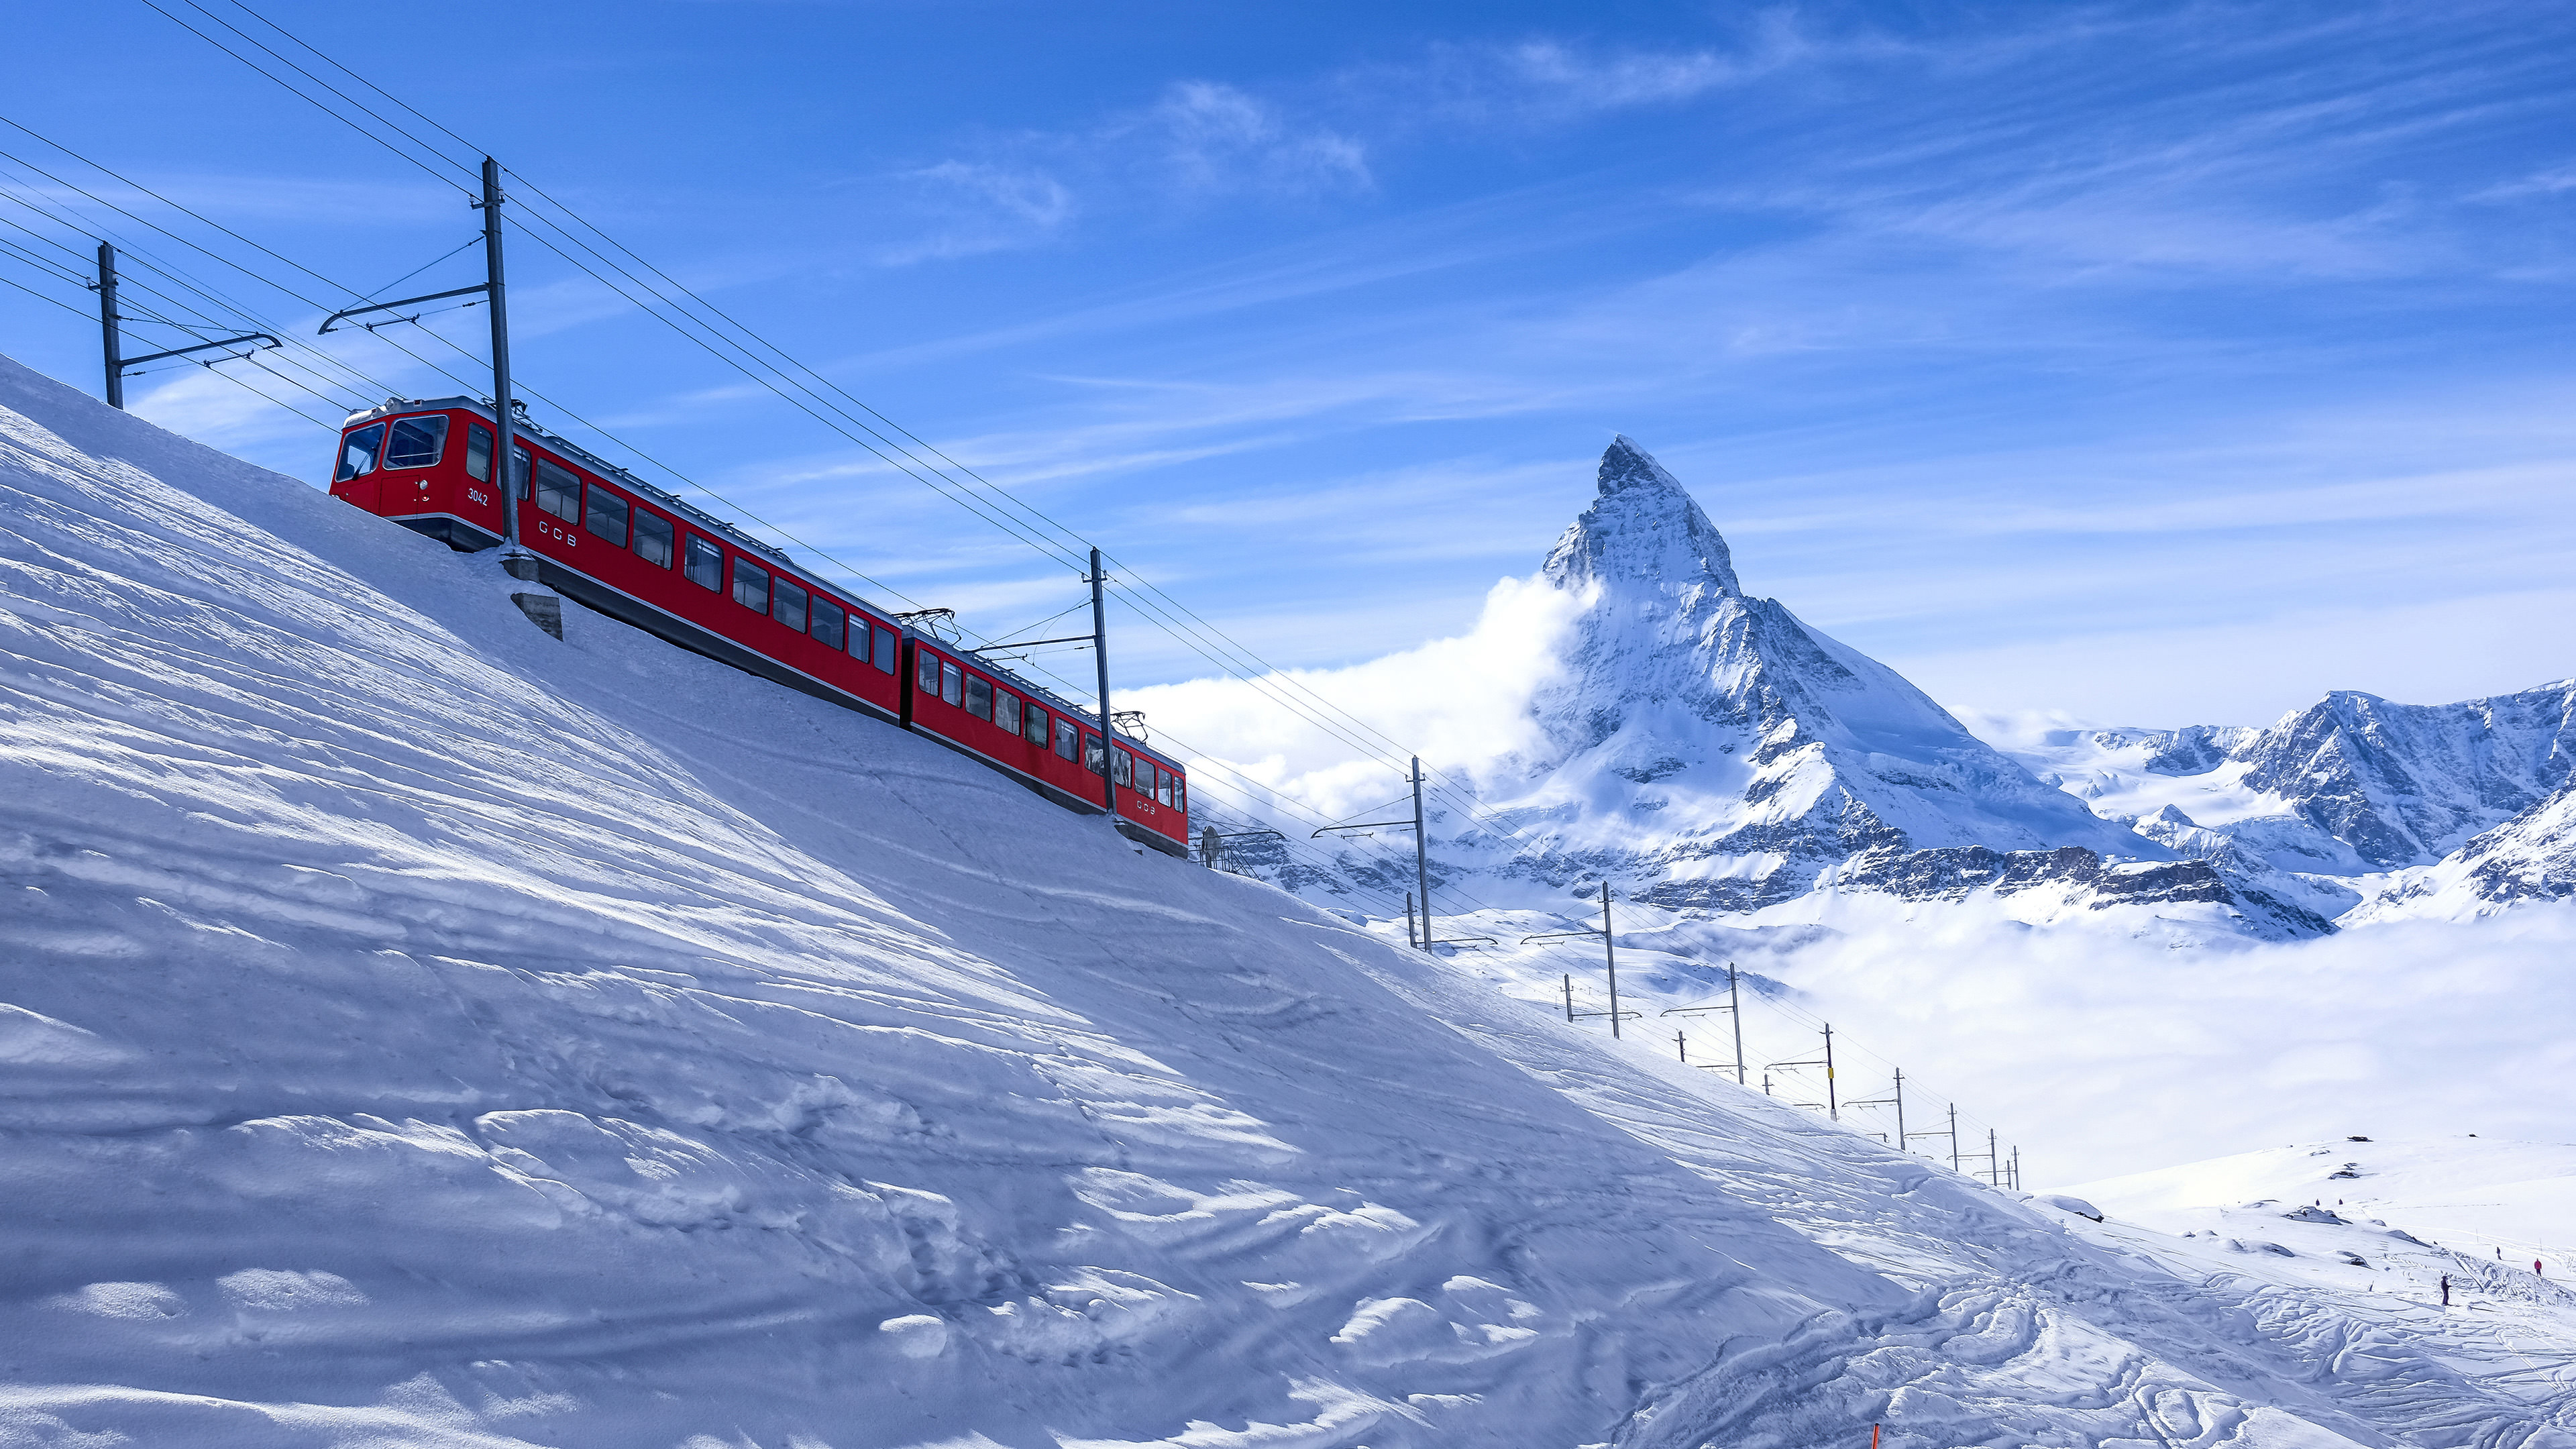 Zermatt, Switzerland, Alps, Snow, Train, Mountains, Matterhorn, Landscape, Clouds, Winter, Nature Wallpaper